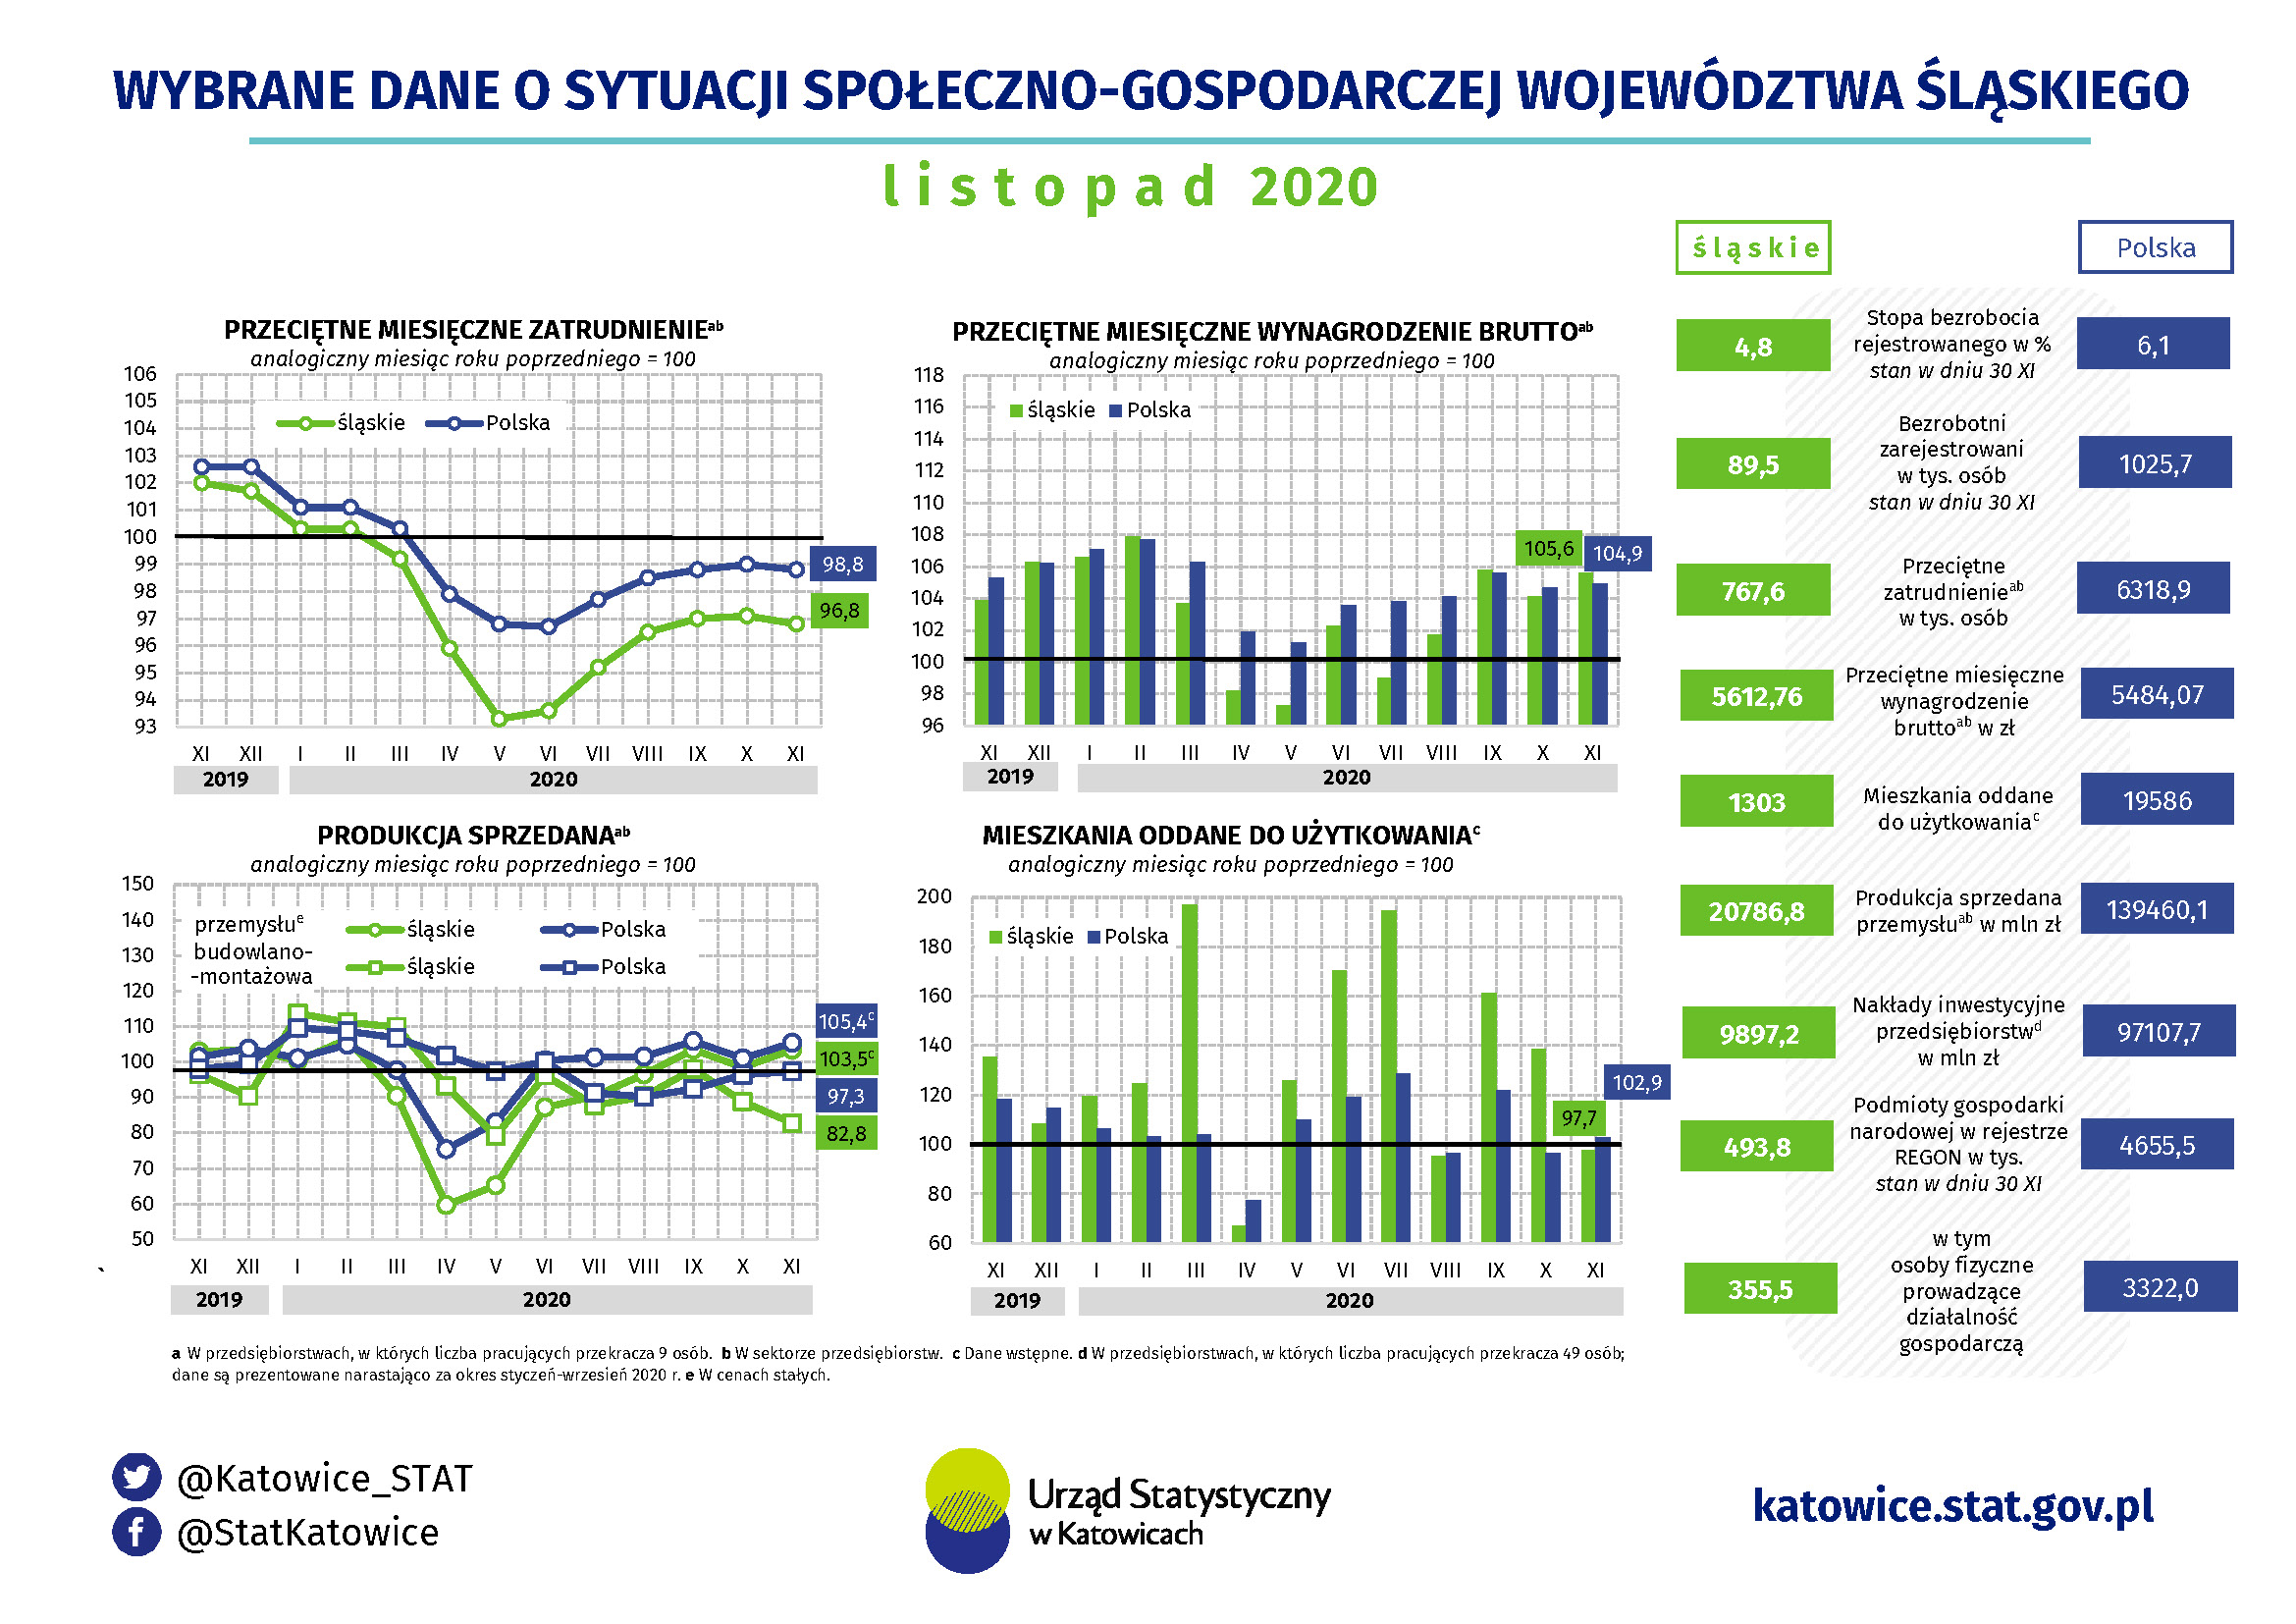 Infografika - Wybrane dane o sytuacji społeczno-gospodarczej województwa śląskiego w listopadzie 2020 r.